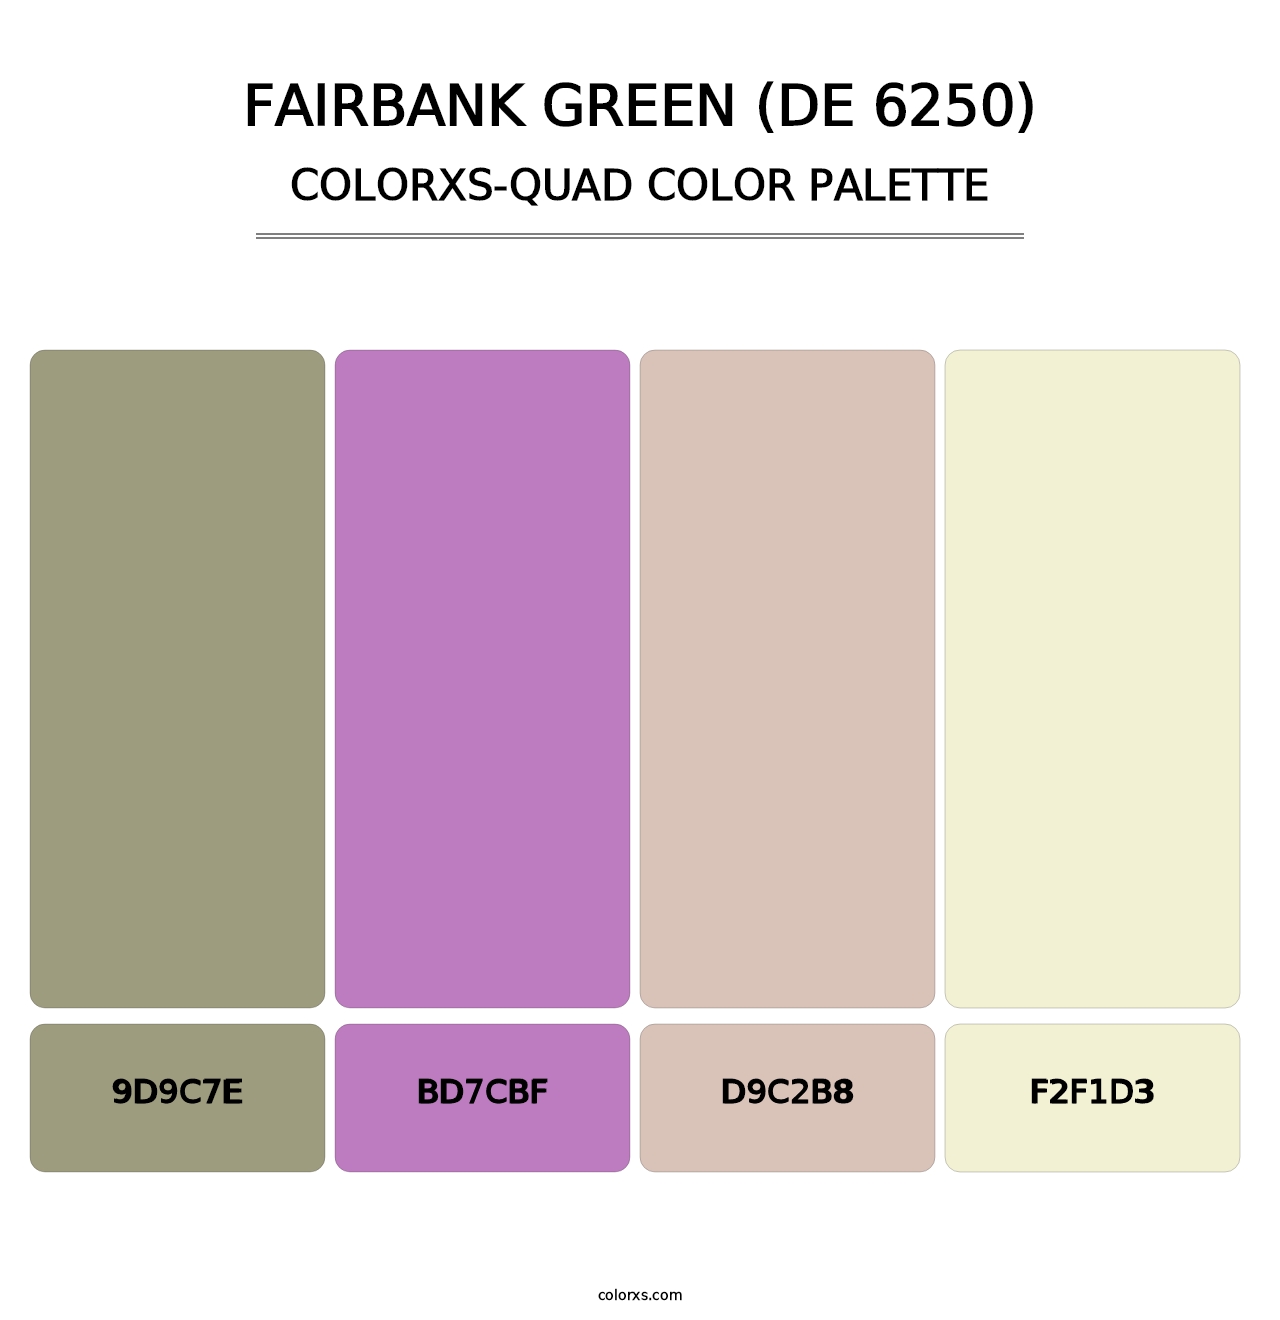 Fairbank Green (DE 6250) - Colorxs Quad Palette